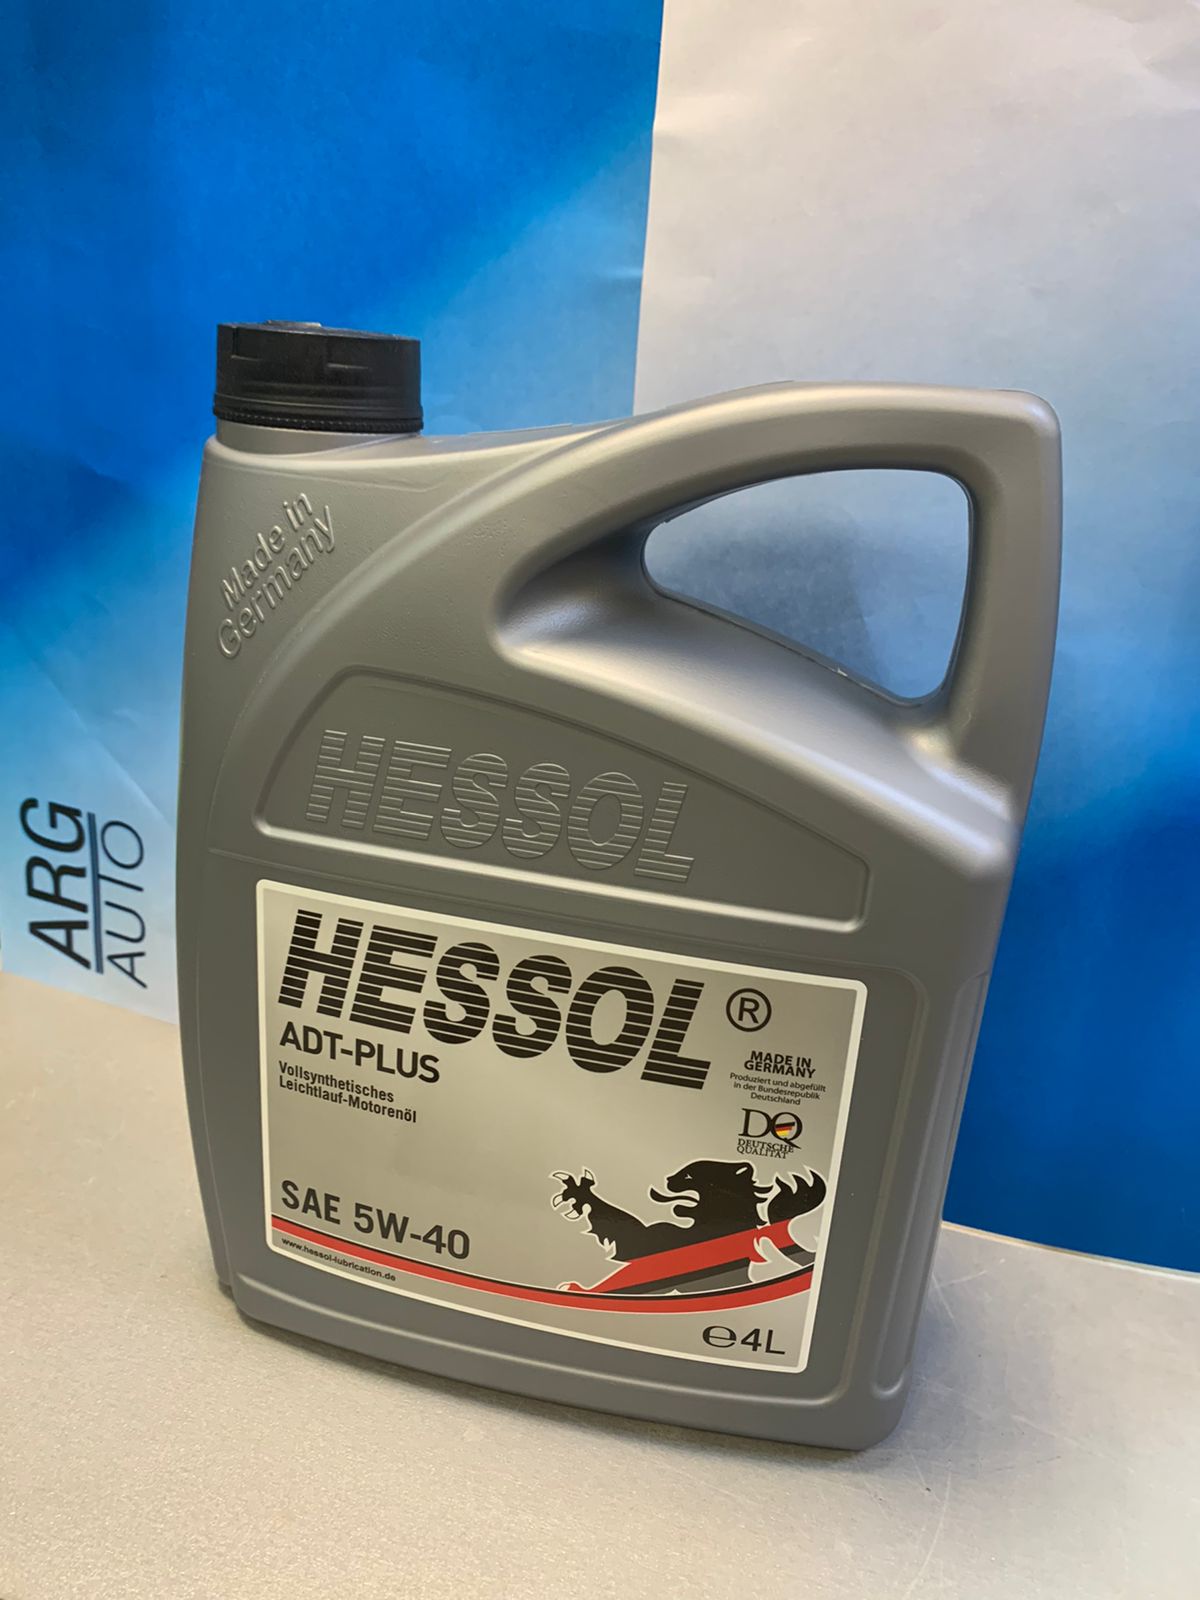 Hessol ADT-PLUS 5W-40 4L